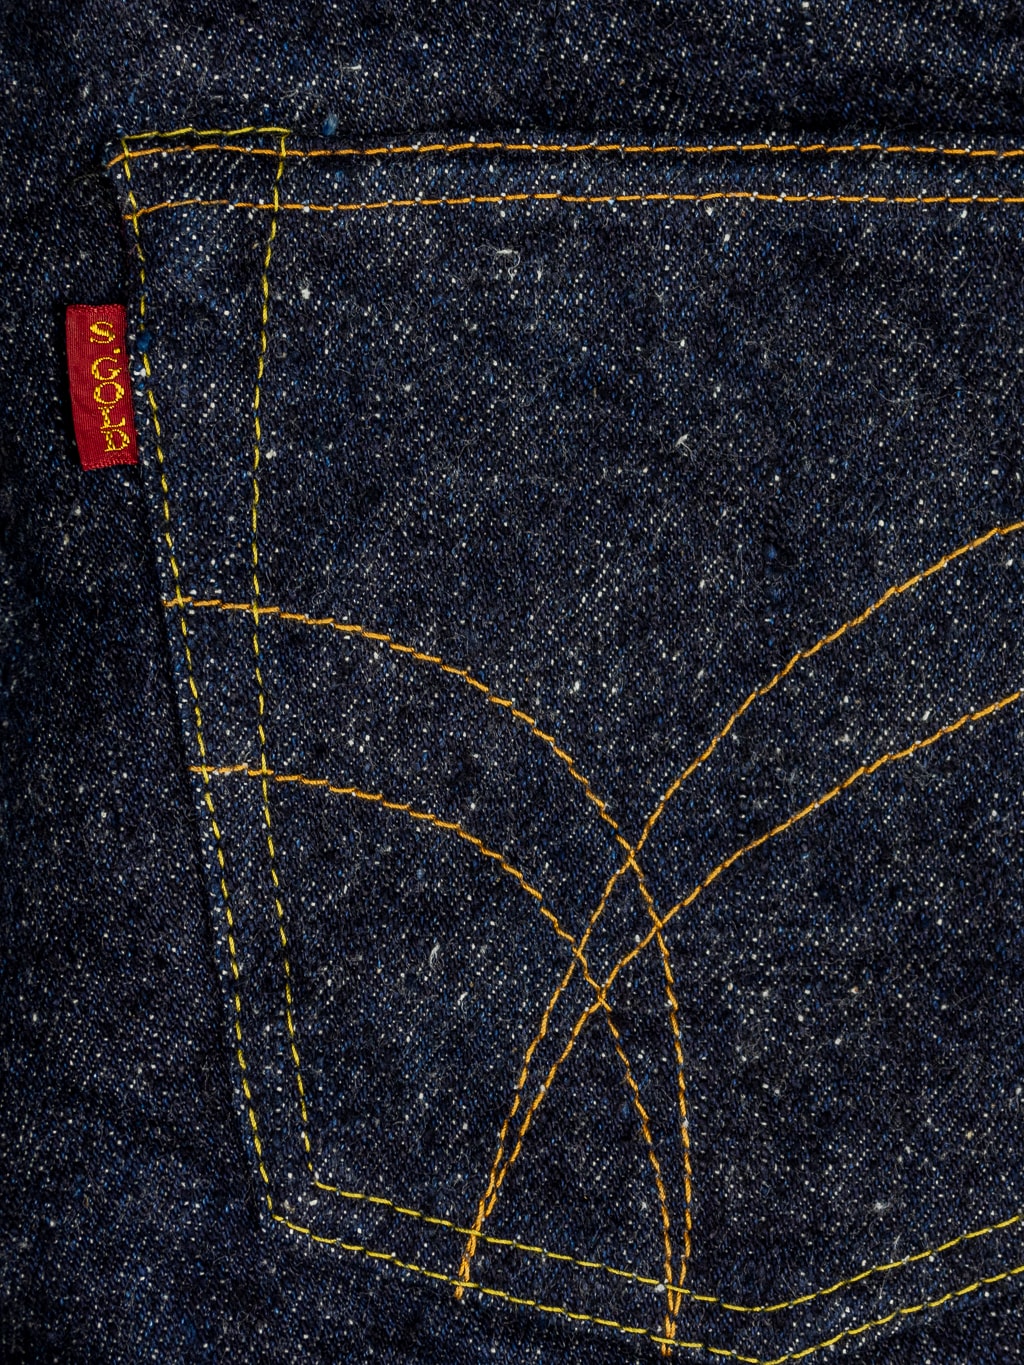 The Strike Gold Keep Earth Natural Indigo Jeans back pocket design